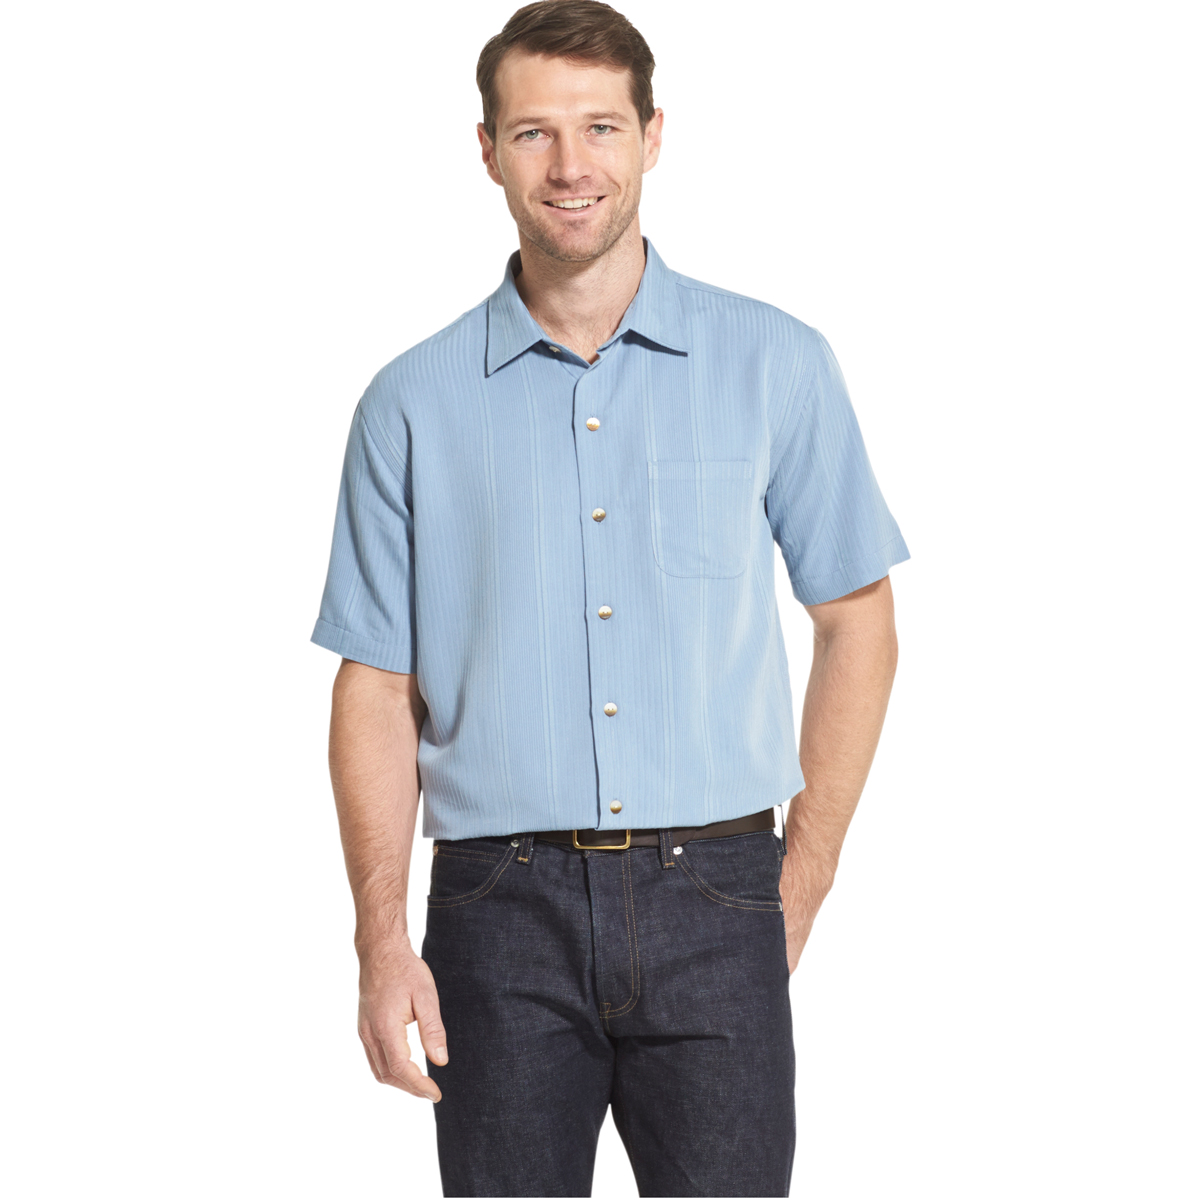 Van Heusen Men's Air Non-Iron Short-Sleeve Shirt - Blue, L